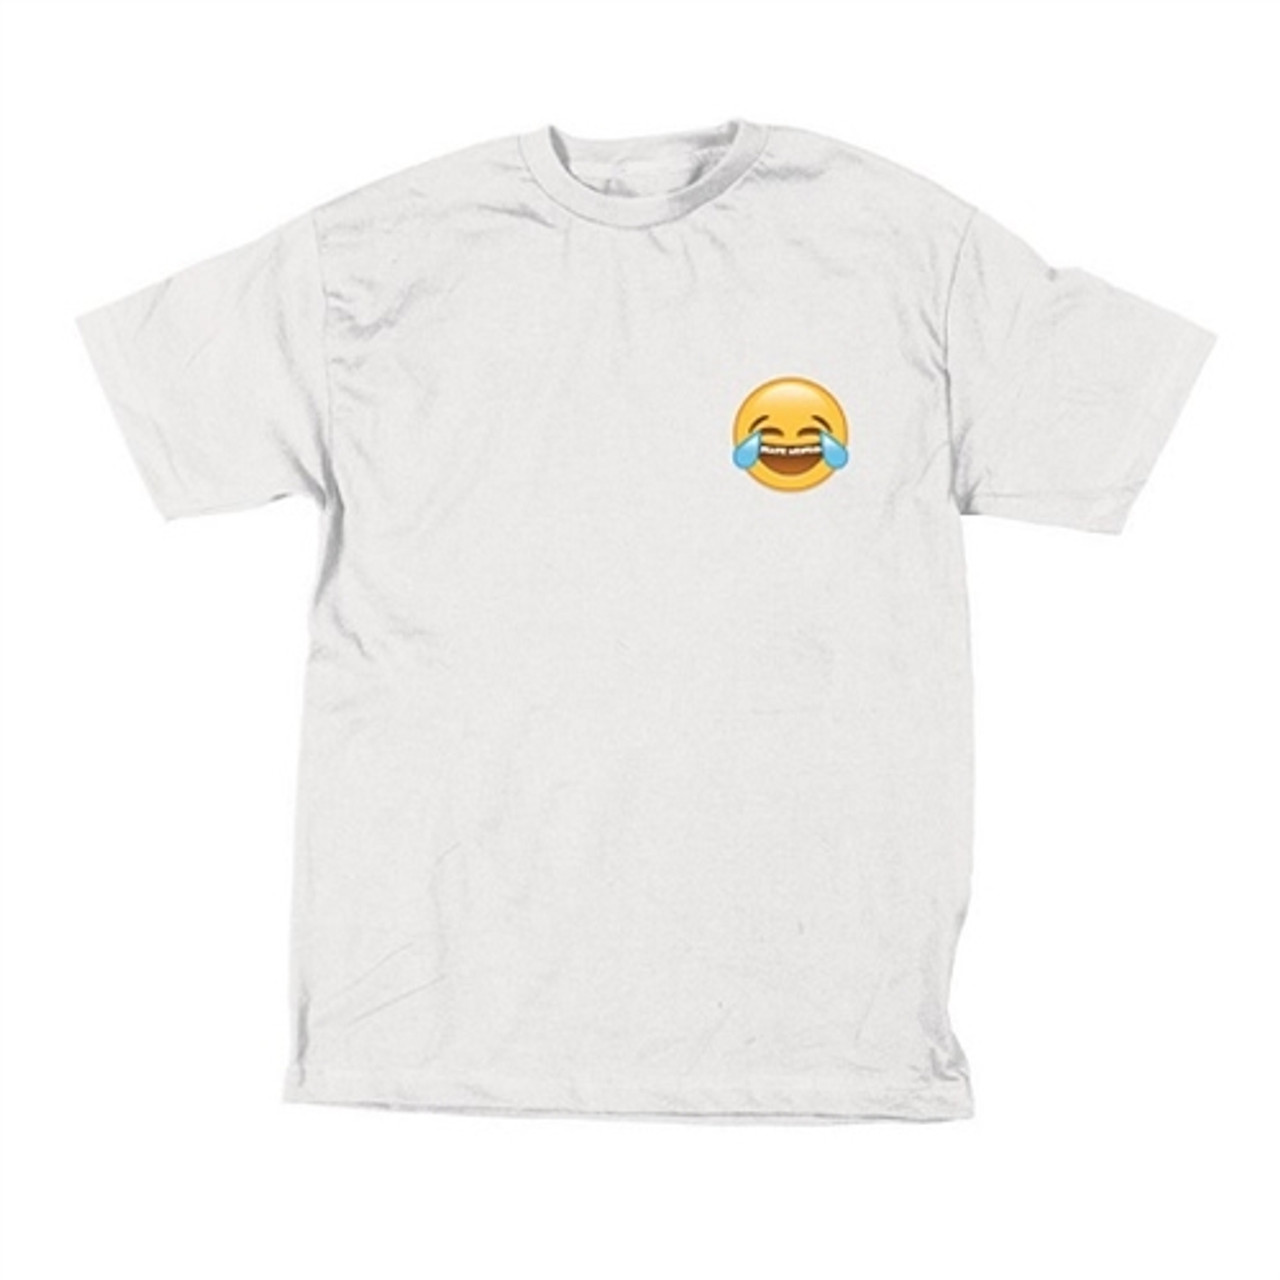 Skate Mental Emoji Tshirt White